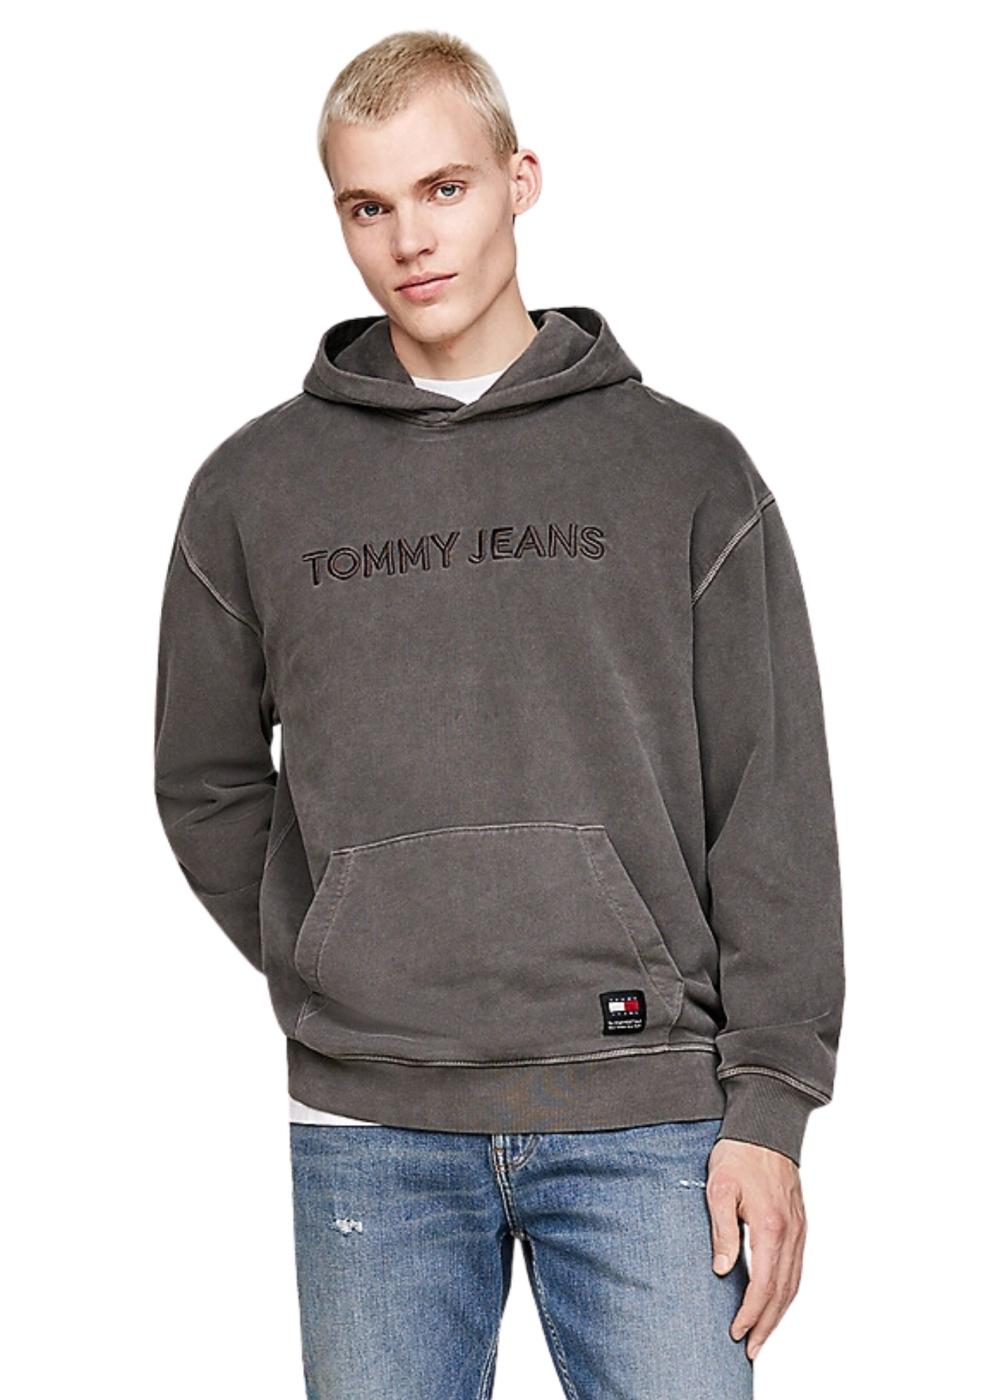 Sudadera Tommy Jeans gris bordado negro hombre